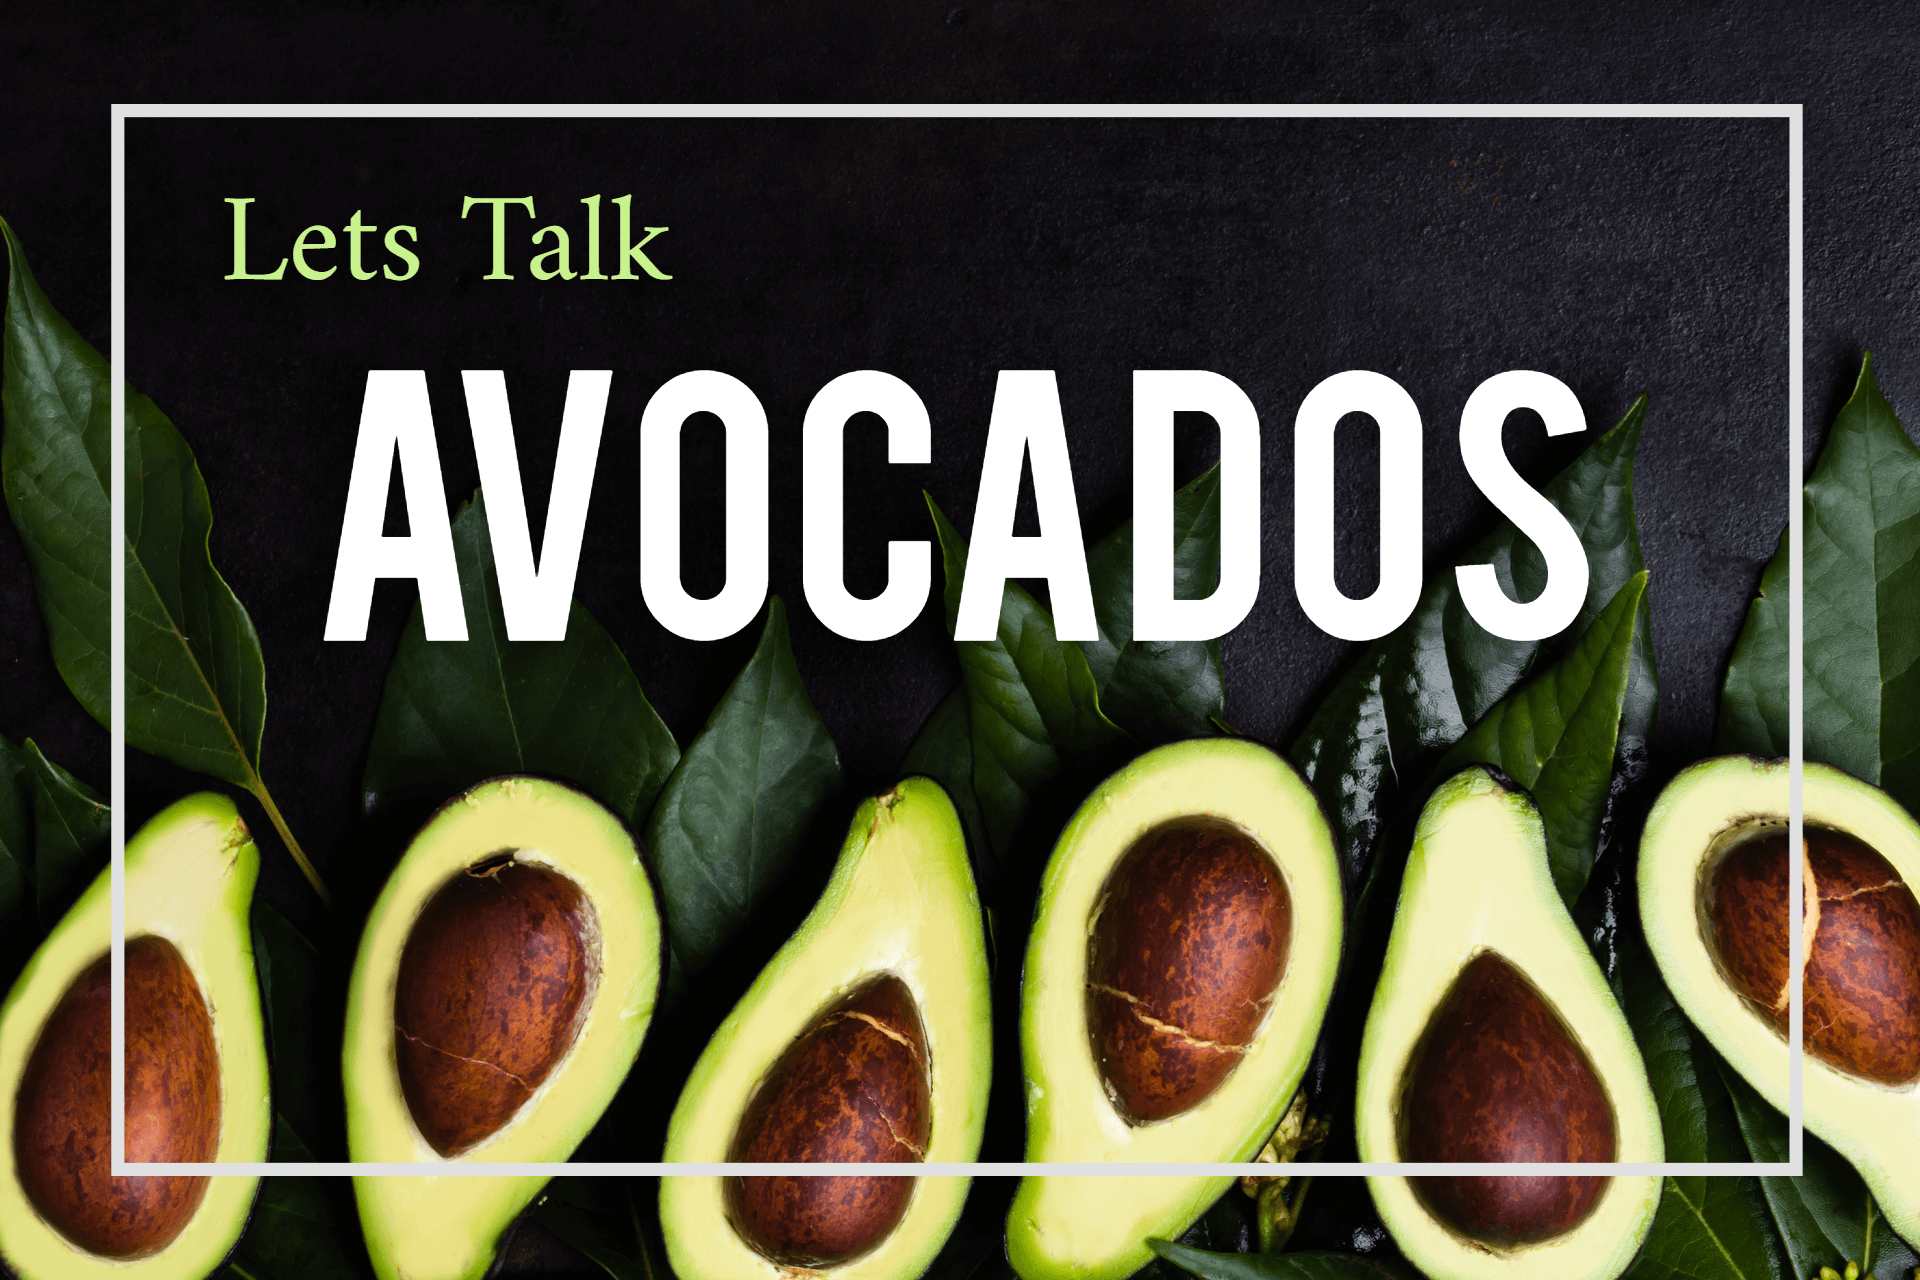 Let's Talk Avocado Trees